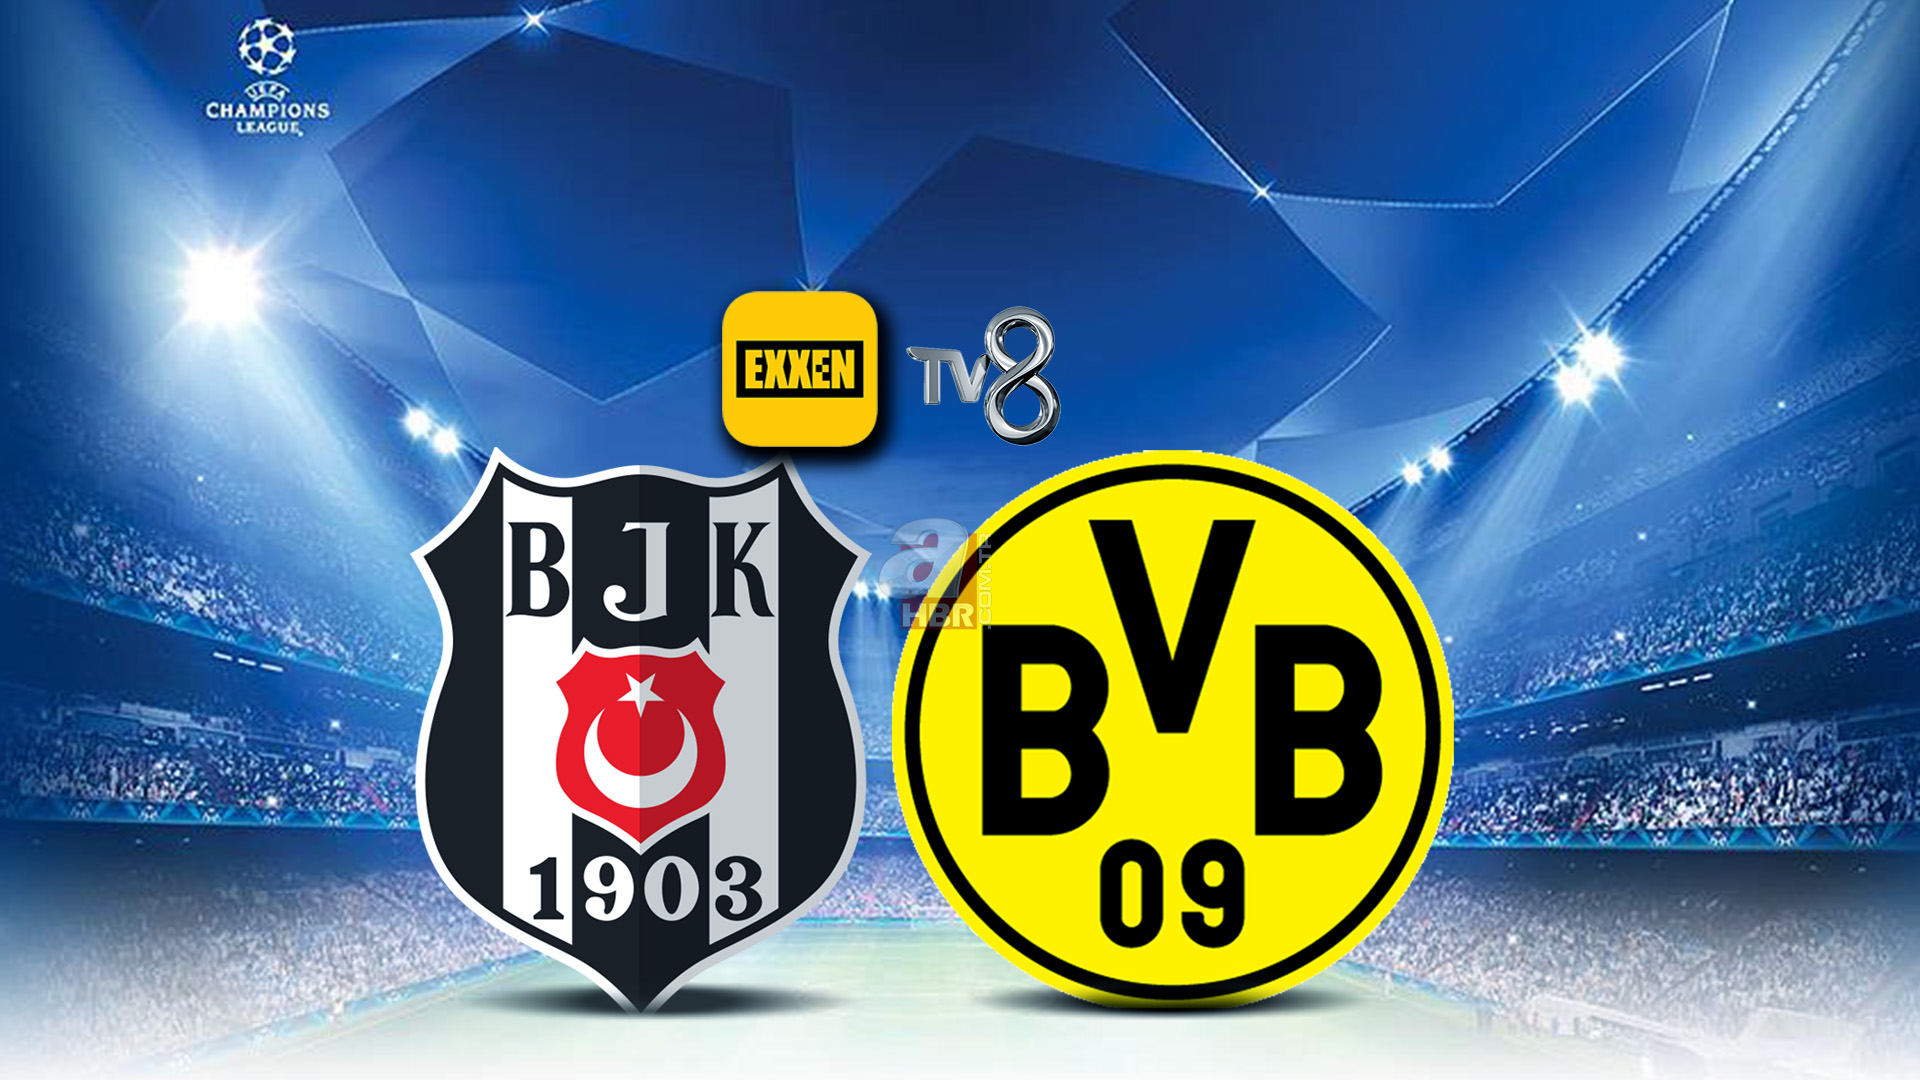 Beşiktaş Borussia Dortmund maçı Tv8de yayınlanacak mı? Şifreli mi, şifresiz mi? 15 Eylül Tv8 yayın akışı